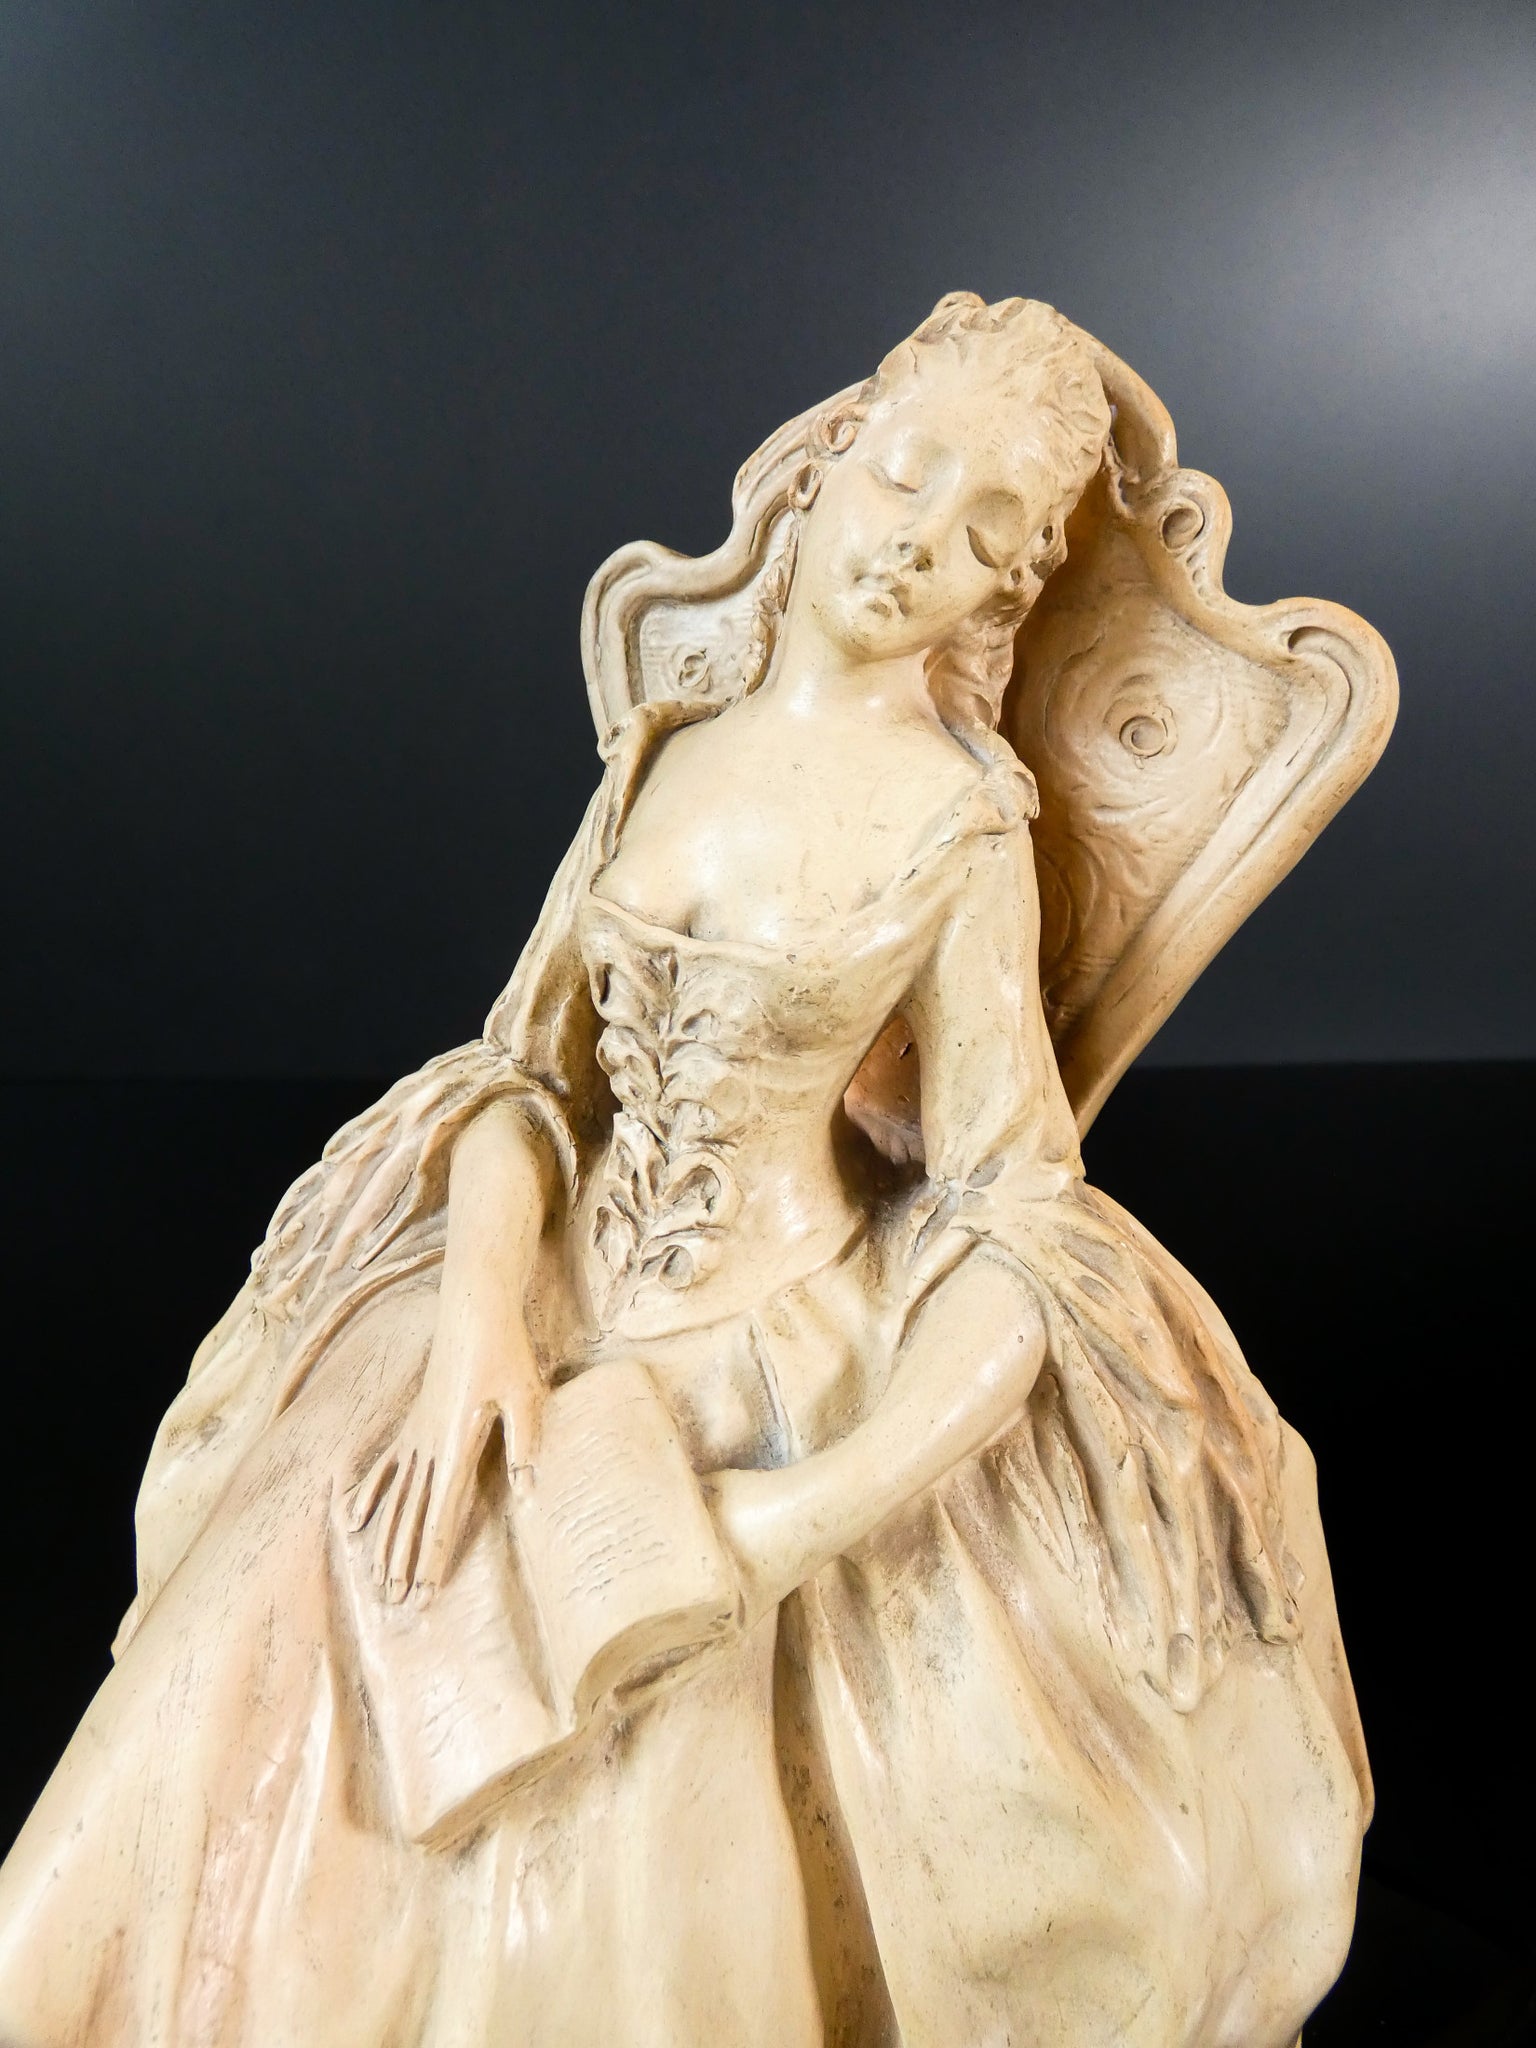 scultura arturo pannunzio firmata terracotta dama dormiente ceramica italia